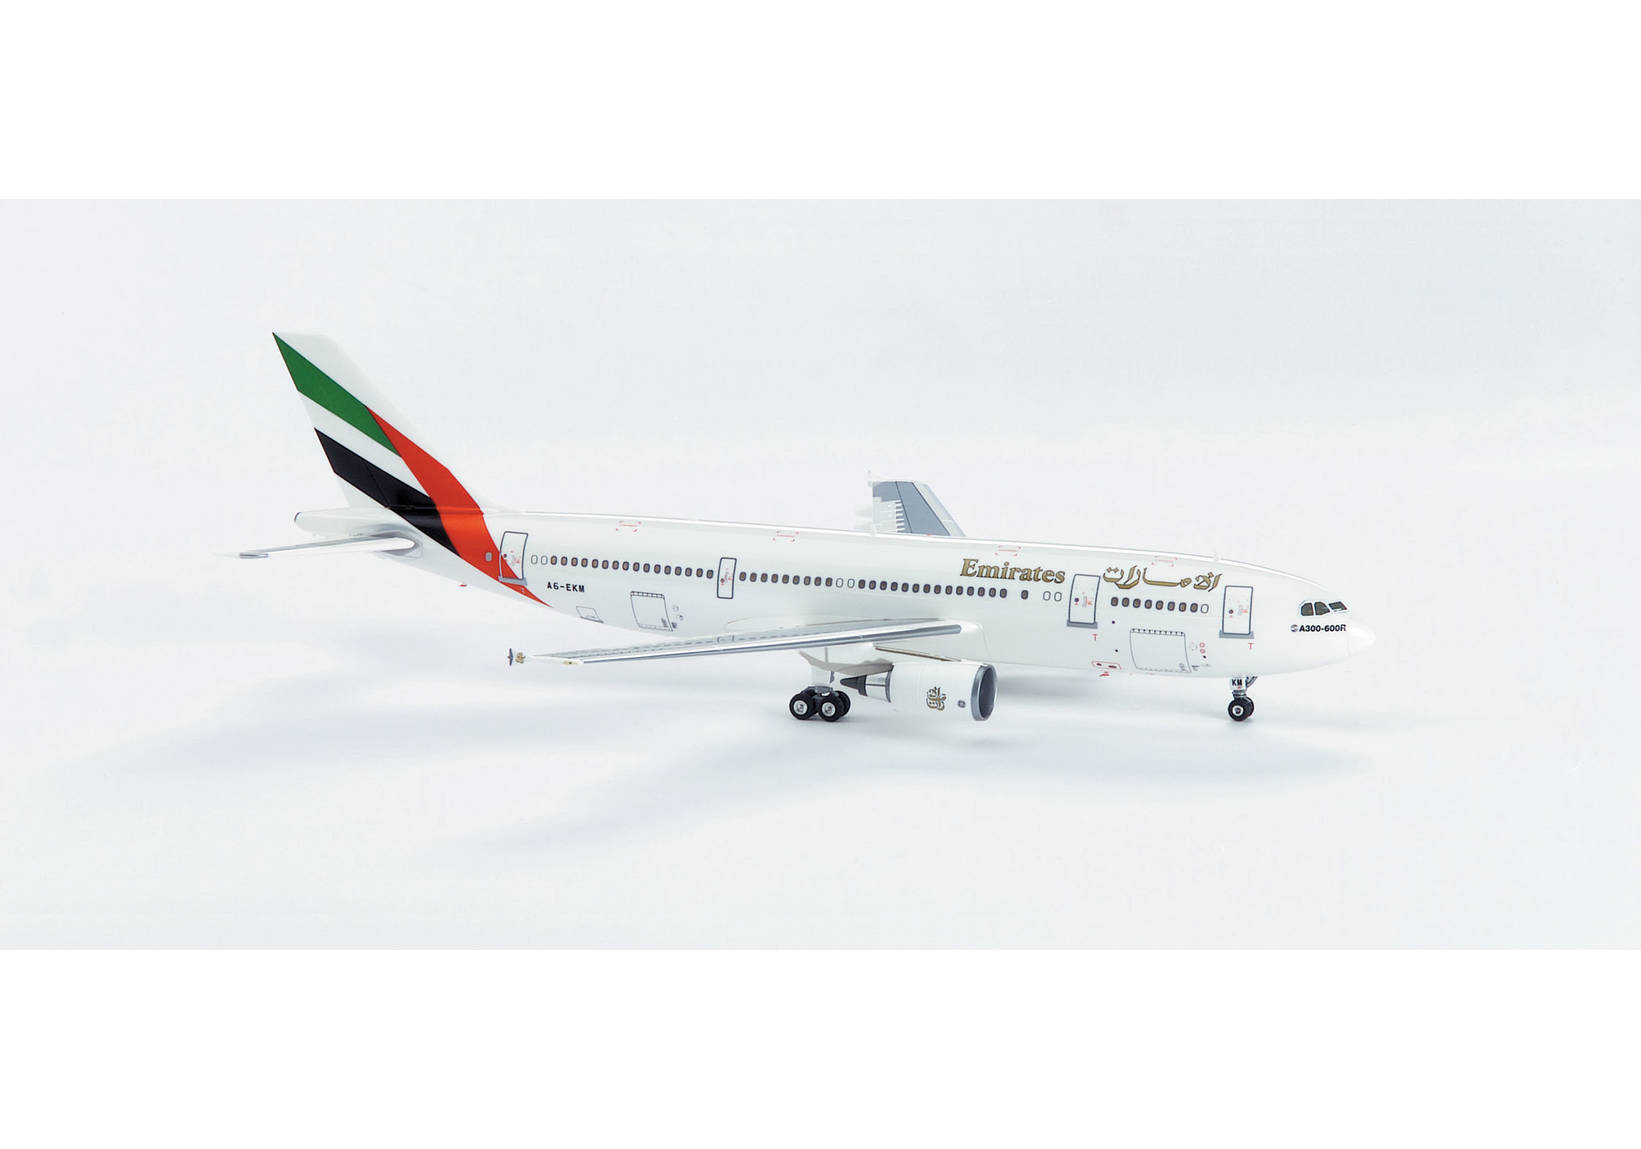 Emirates Airbus A300-600 ***PREMIUM SERIES 1:200***